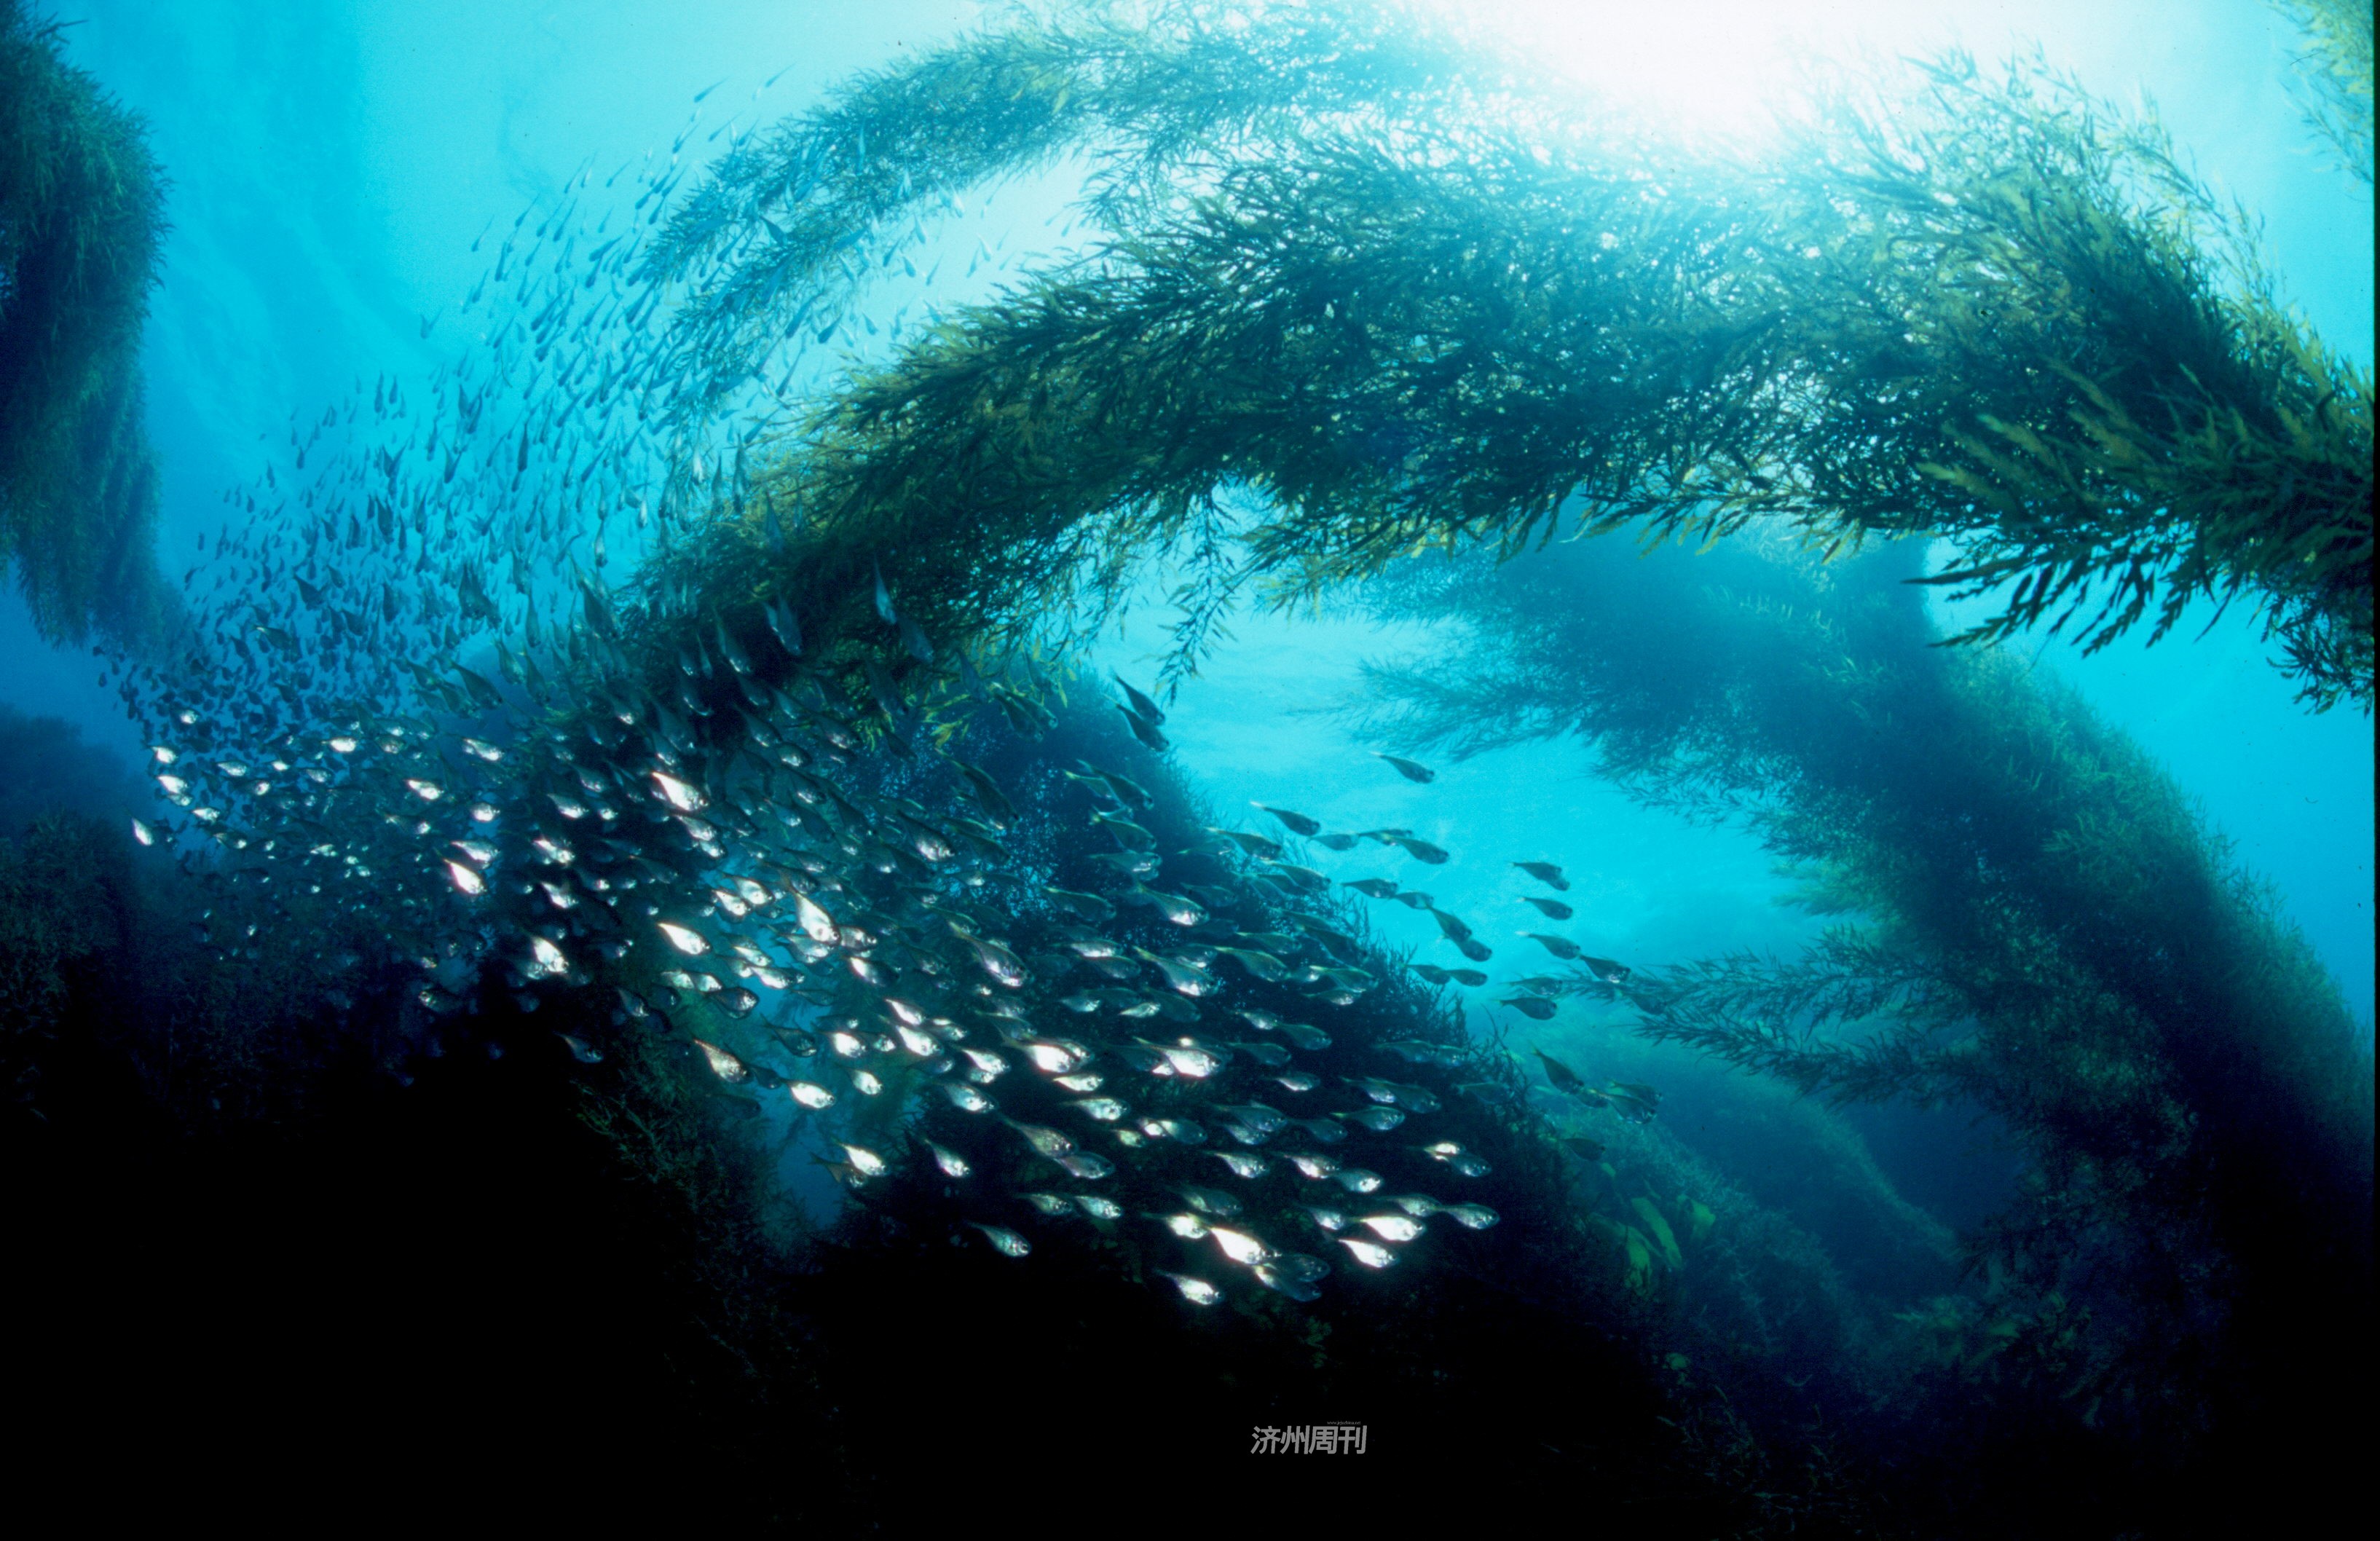 森林里的鱼类跳水国际照片征集作品展